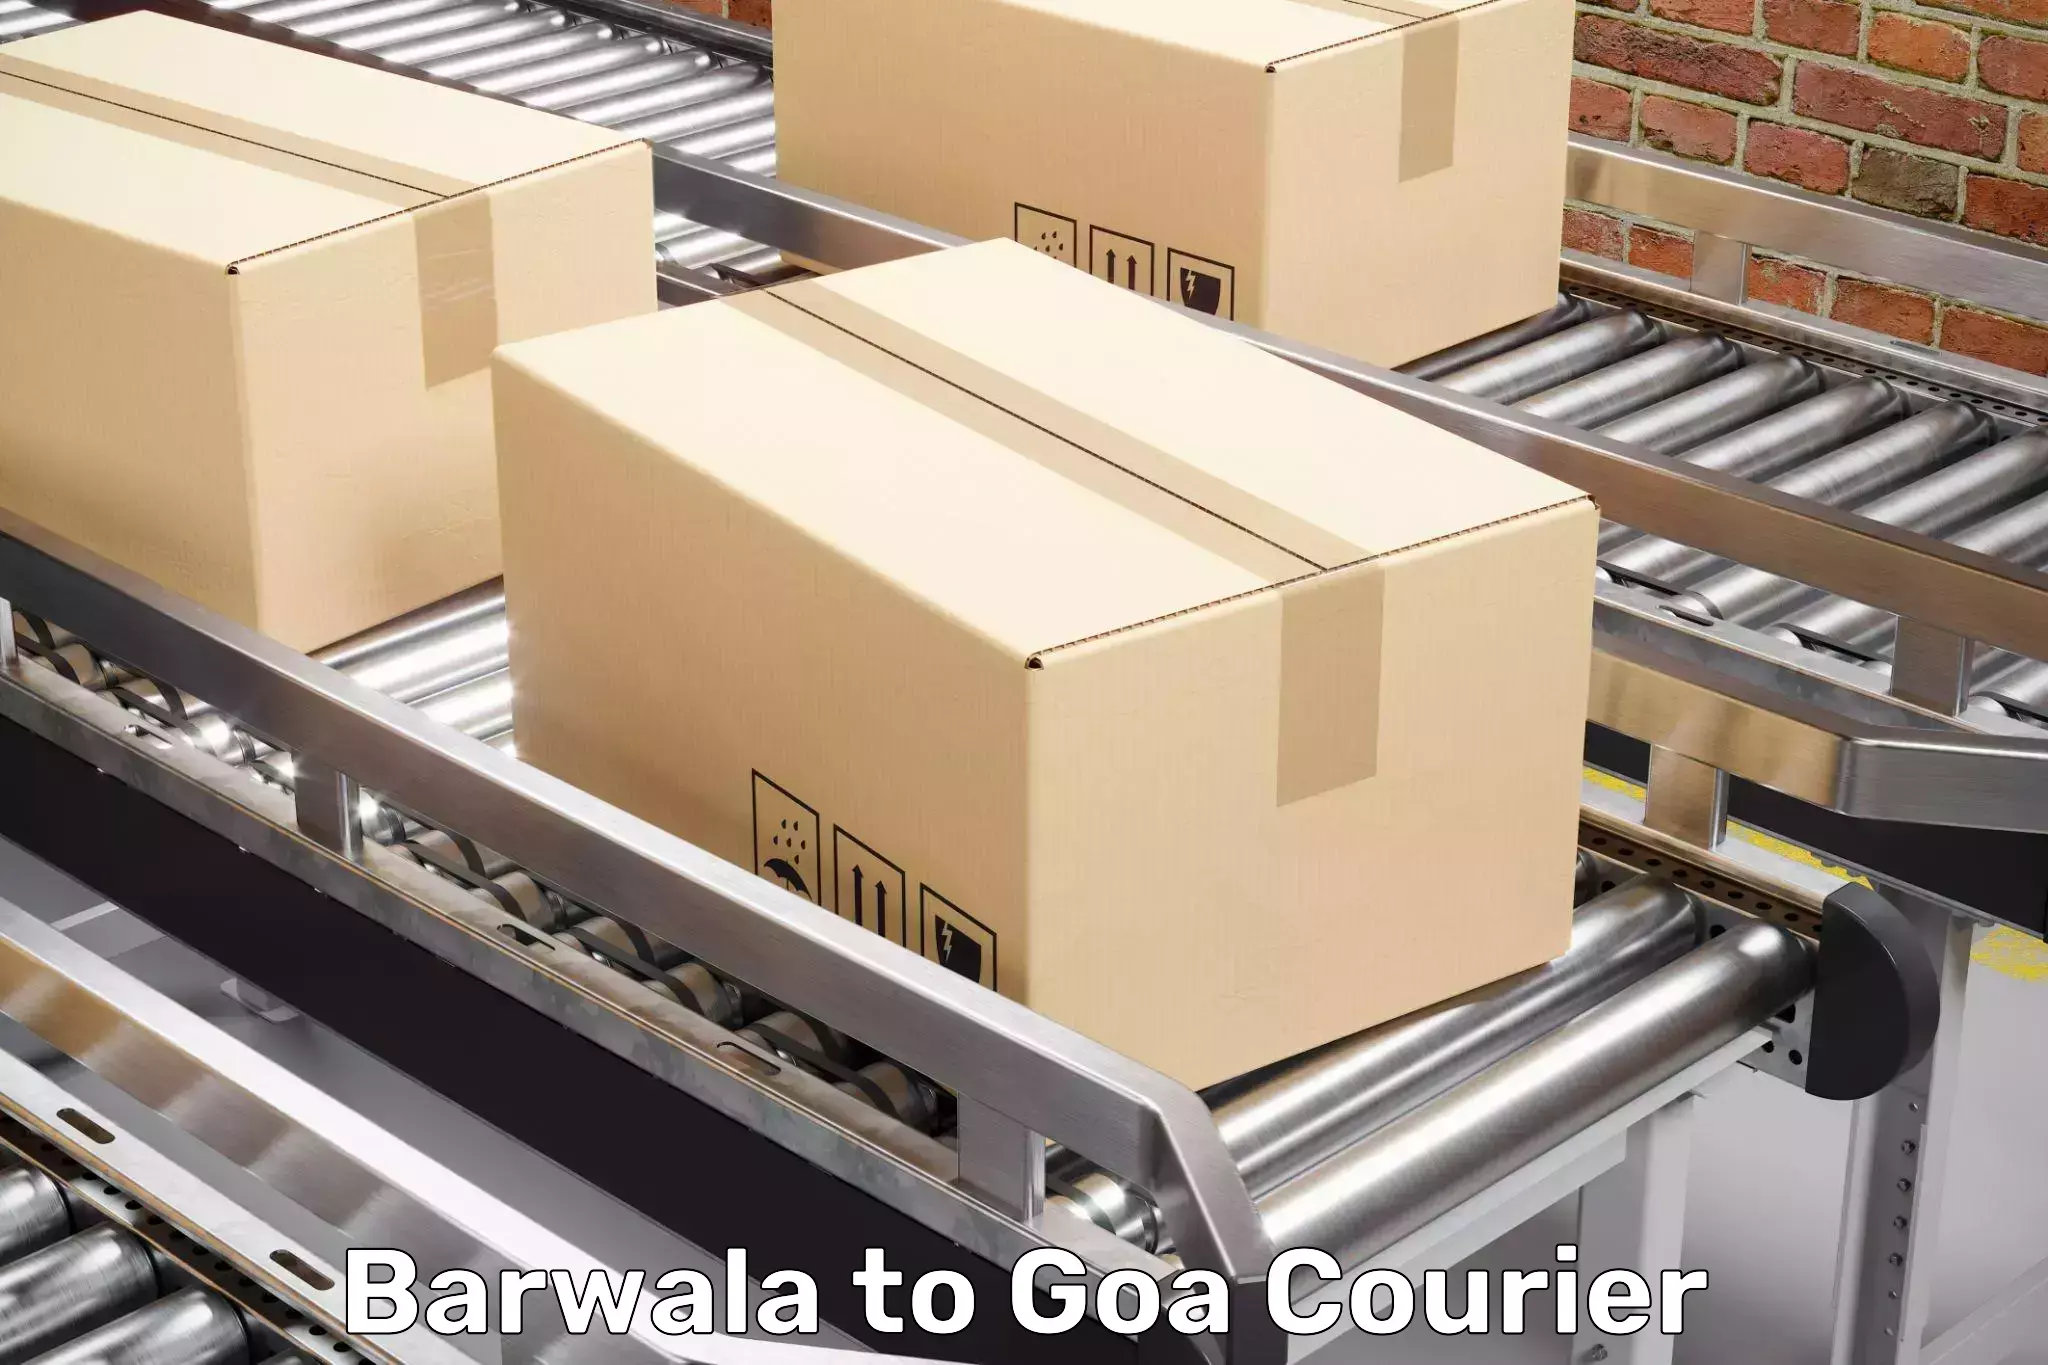 Door-to-door relocation services Barwala to NIT Goa